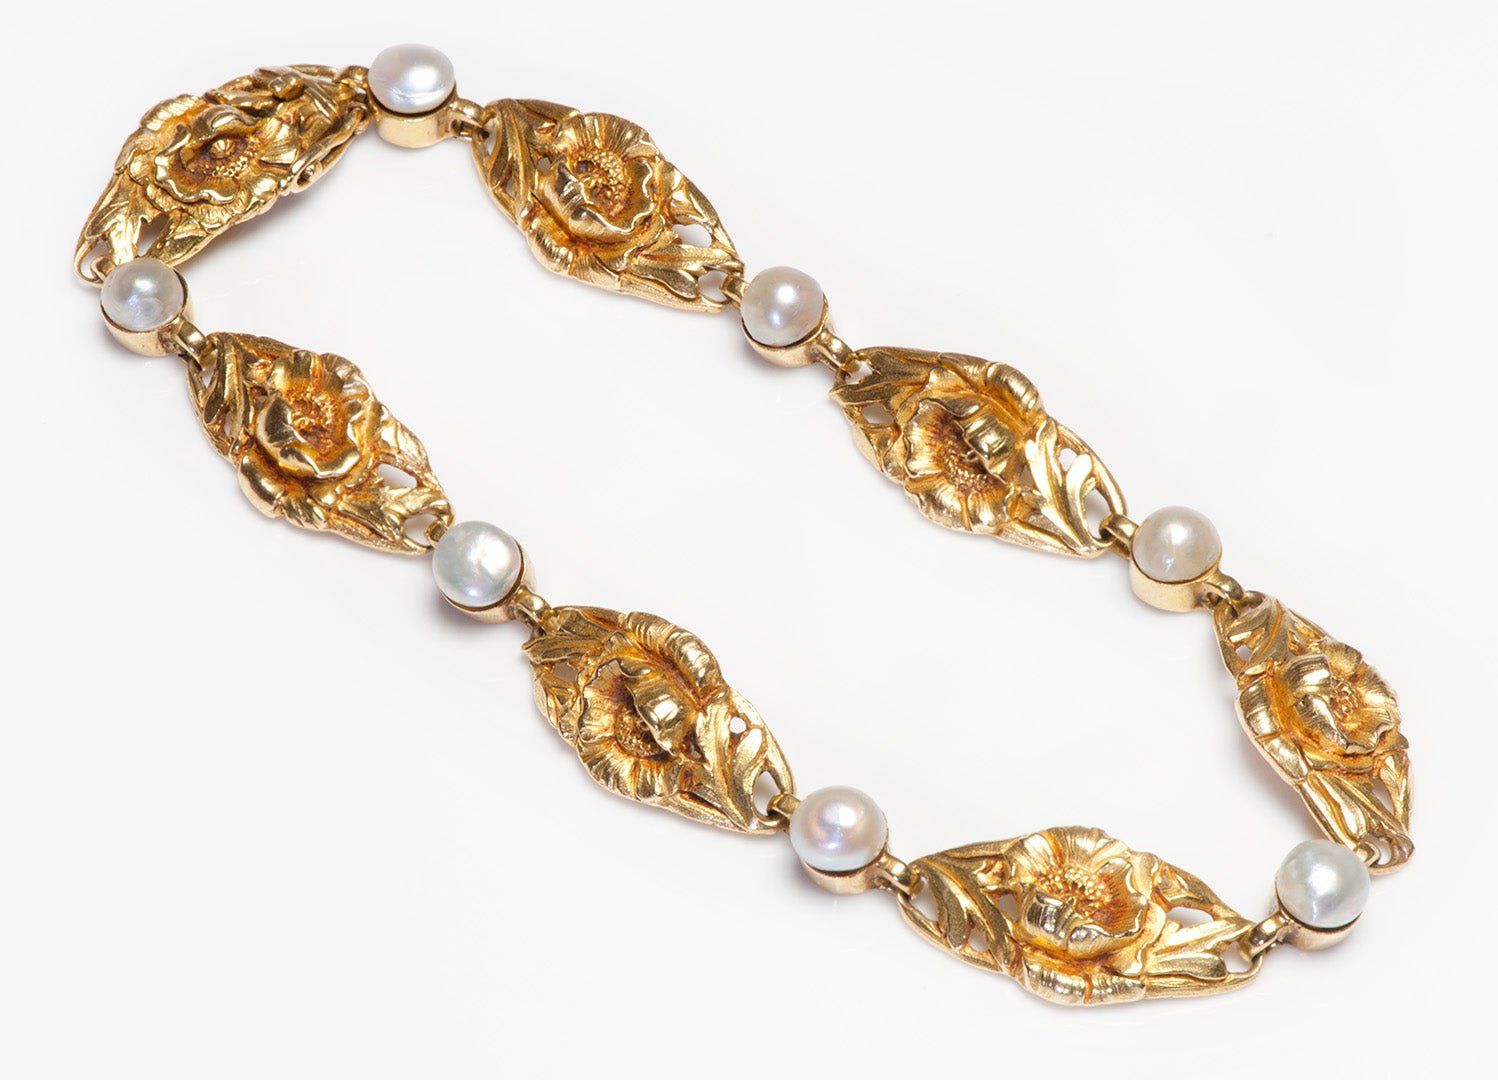 Antique French 18K Gold Natural Pearl Bracelet